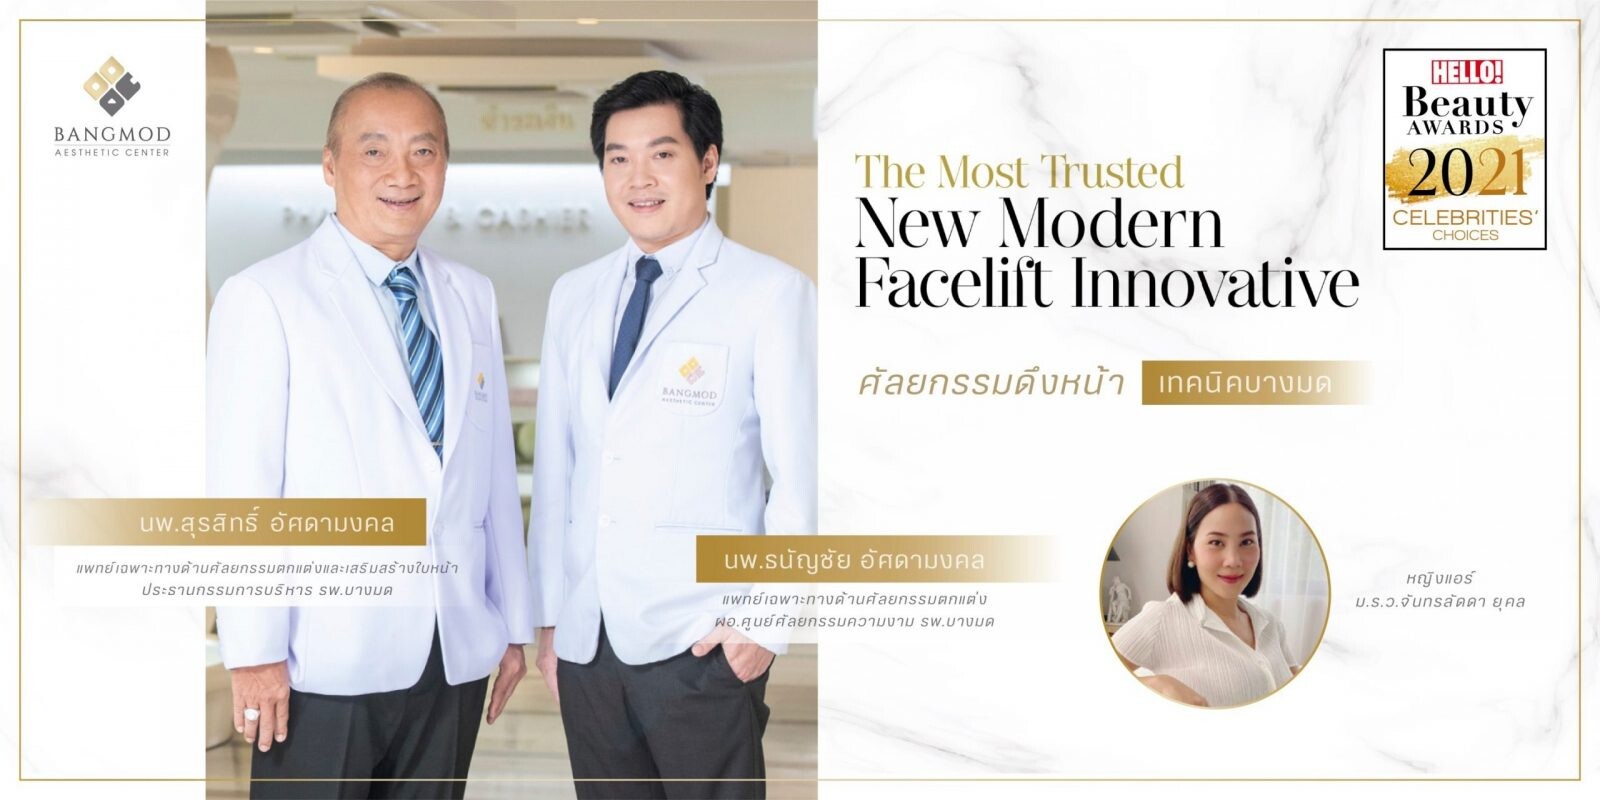 ตอกย้ำ!! ความเป็นอันดับหนึ่งด้านศัลยกรรมความงามกับรางวัล "The Most Trusted New Modern Facelift Innovative" โดย Hello Magazine